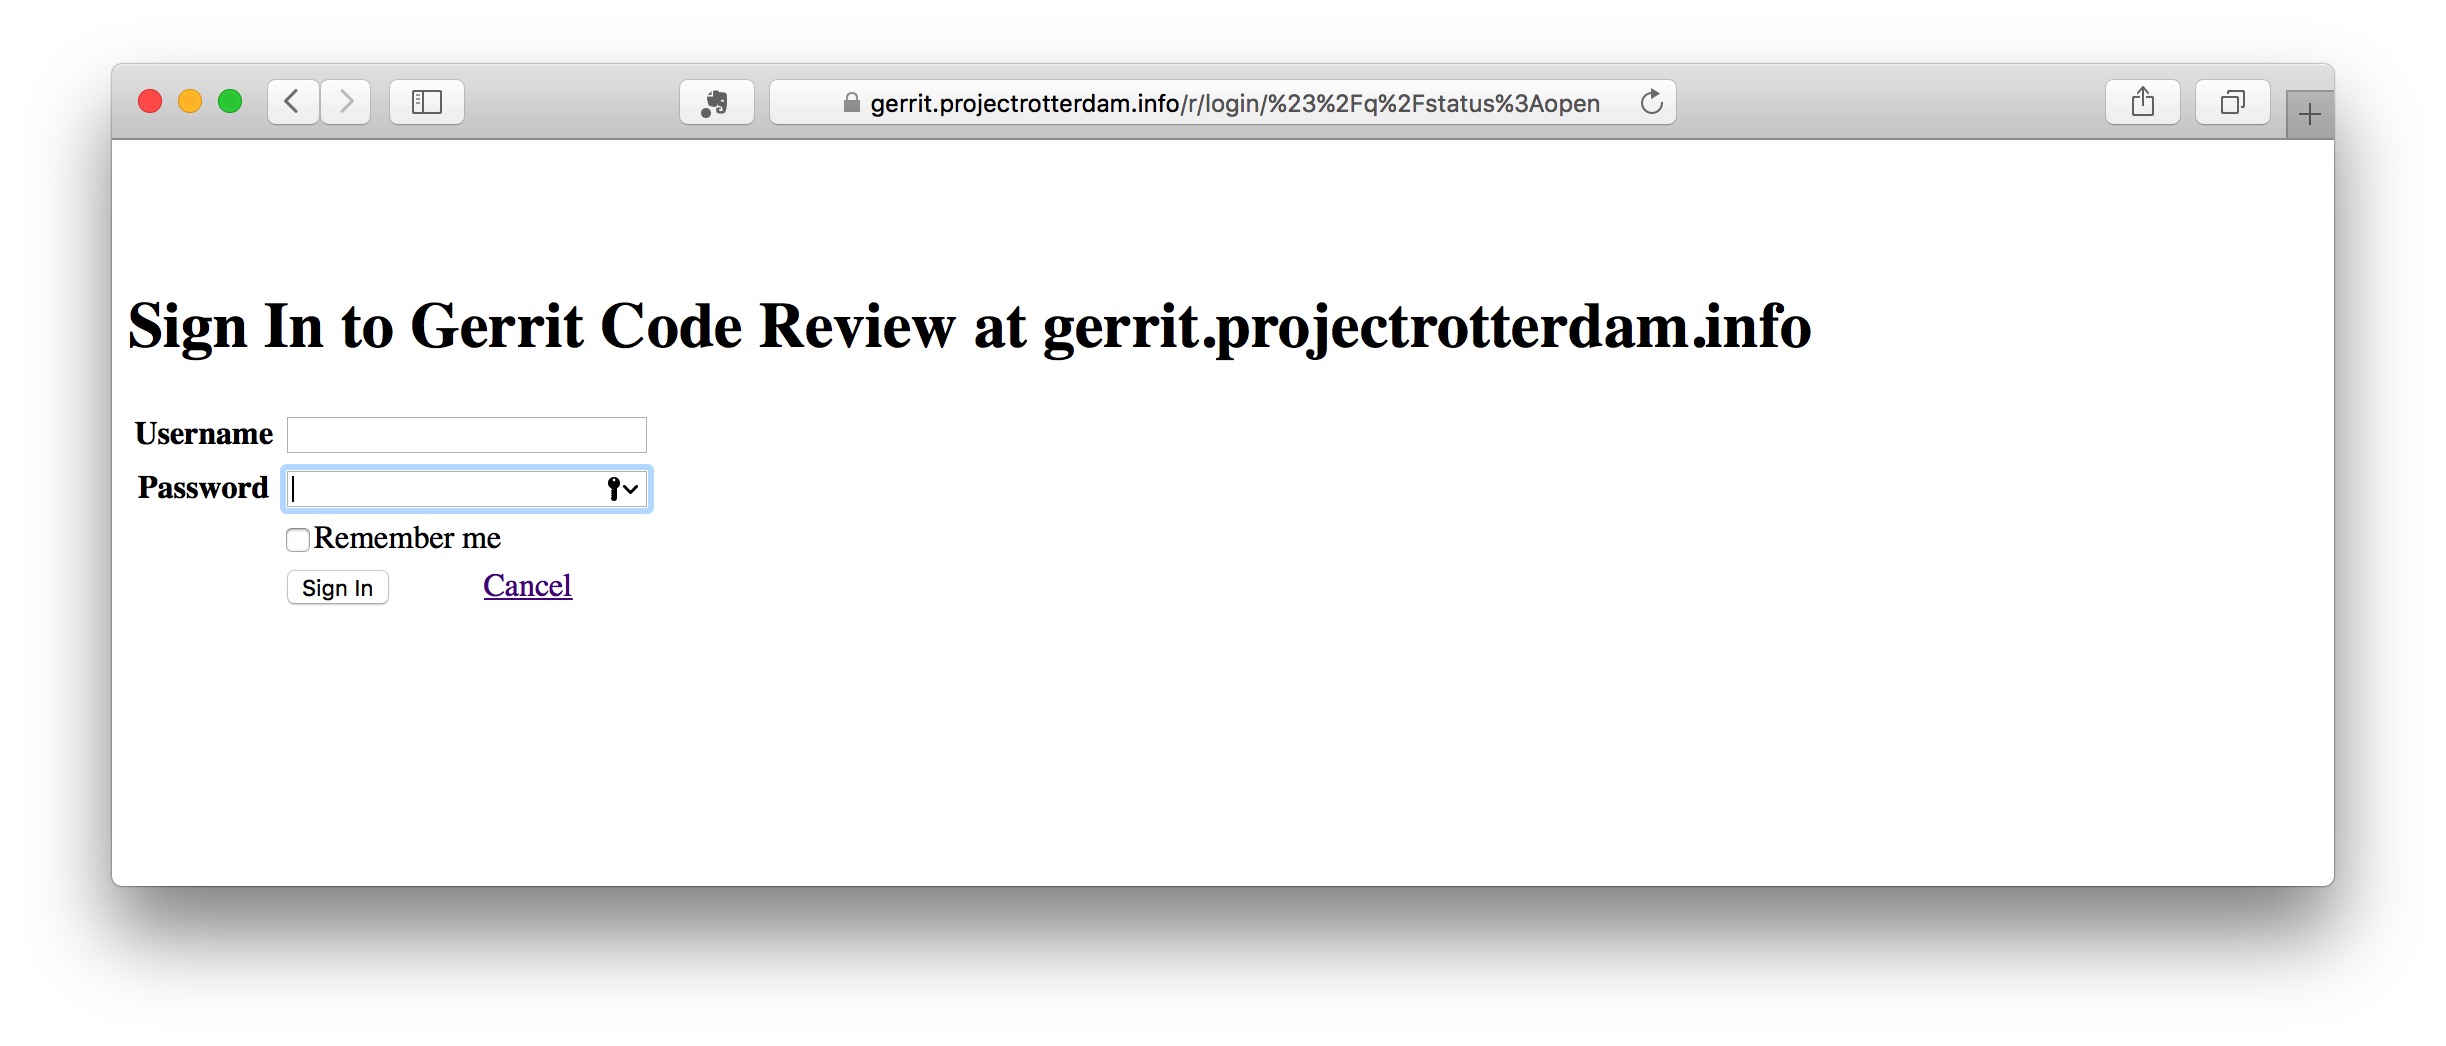 Gerrit Code Review - Sign In.jpg